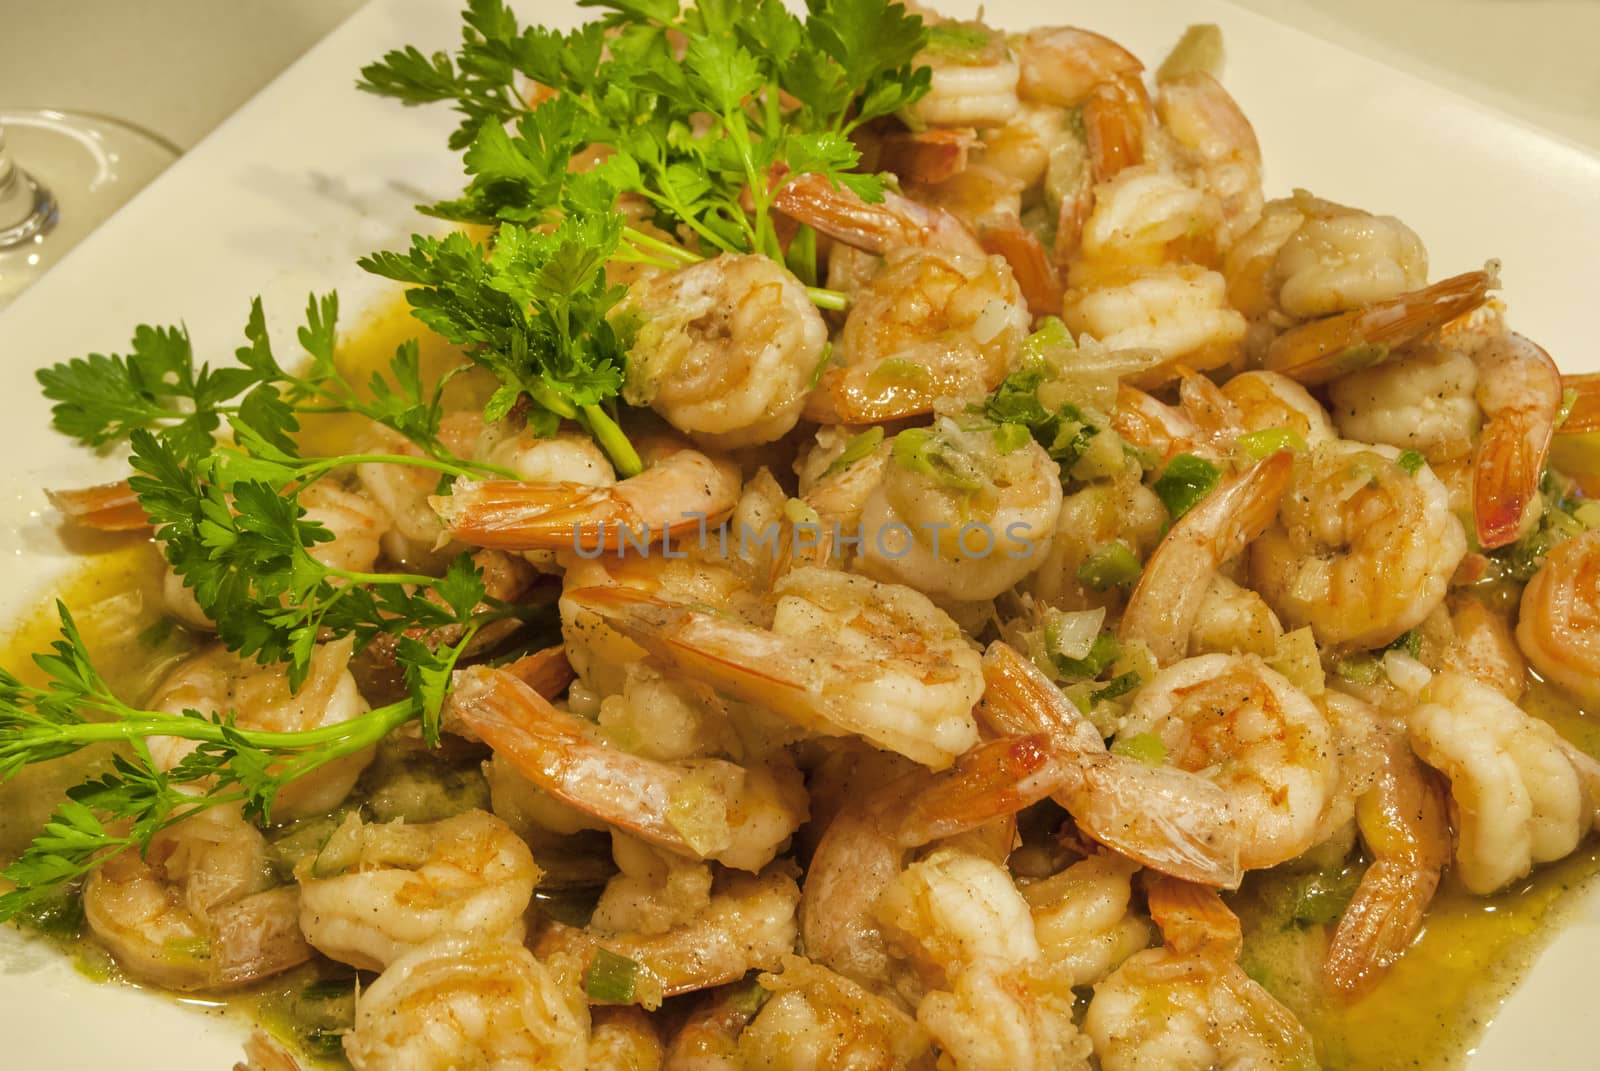 Cooked steamed shrimps by varbenov